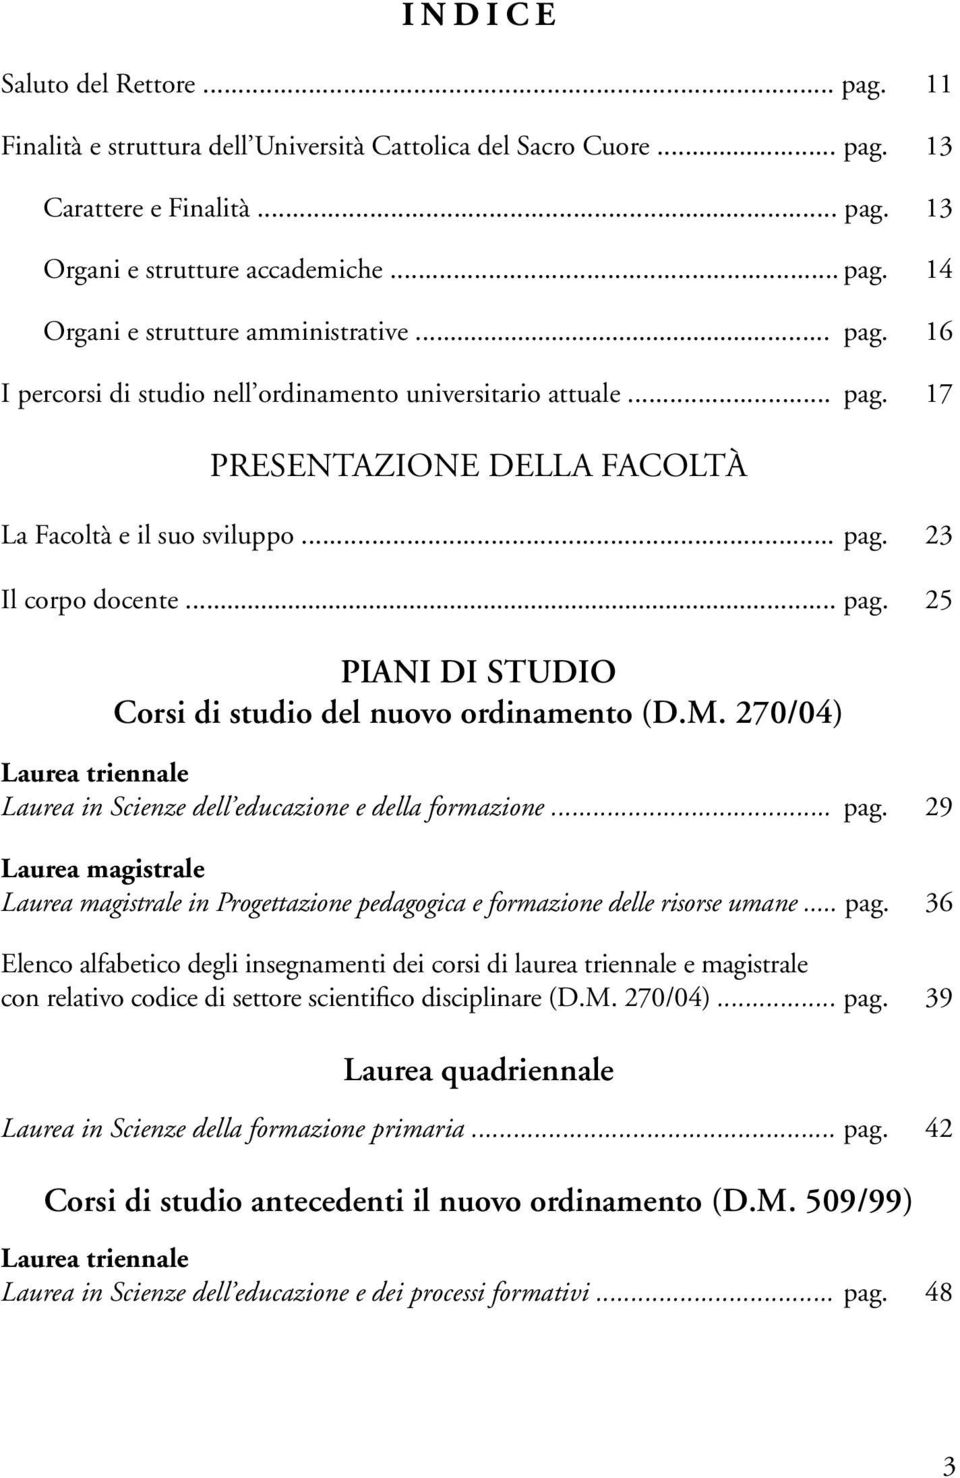 25 Piani di studio Corsi di studio del nuovo ordinamento (D.M. 270/04) Laurea triennale Laurea in Scienze dell educazione e della formazione....pag.